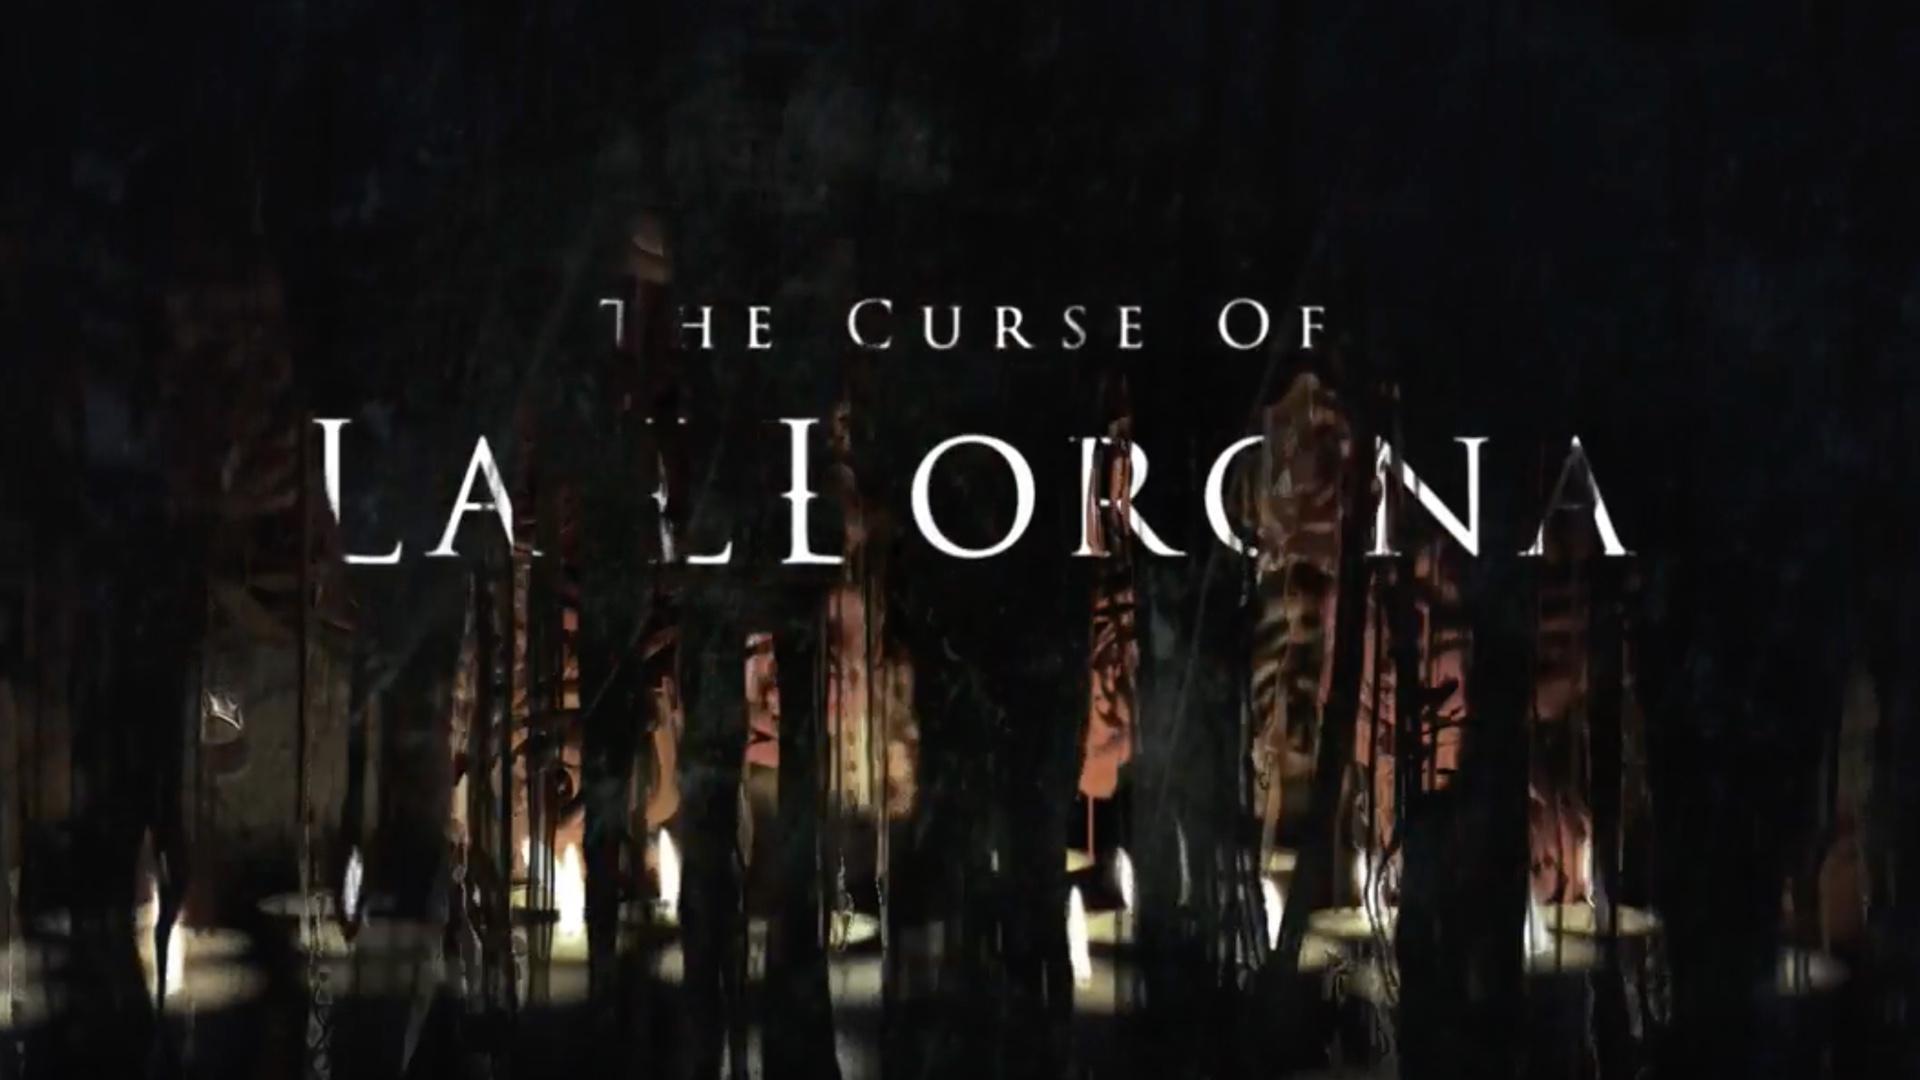 بوستر فيلم  The CURSE of LlORONA - أفلام 2019 المنتظرة 